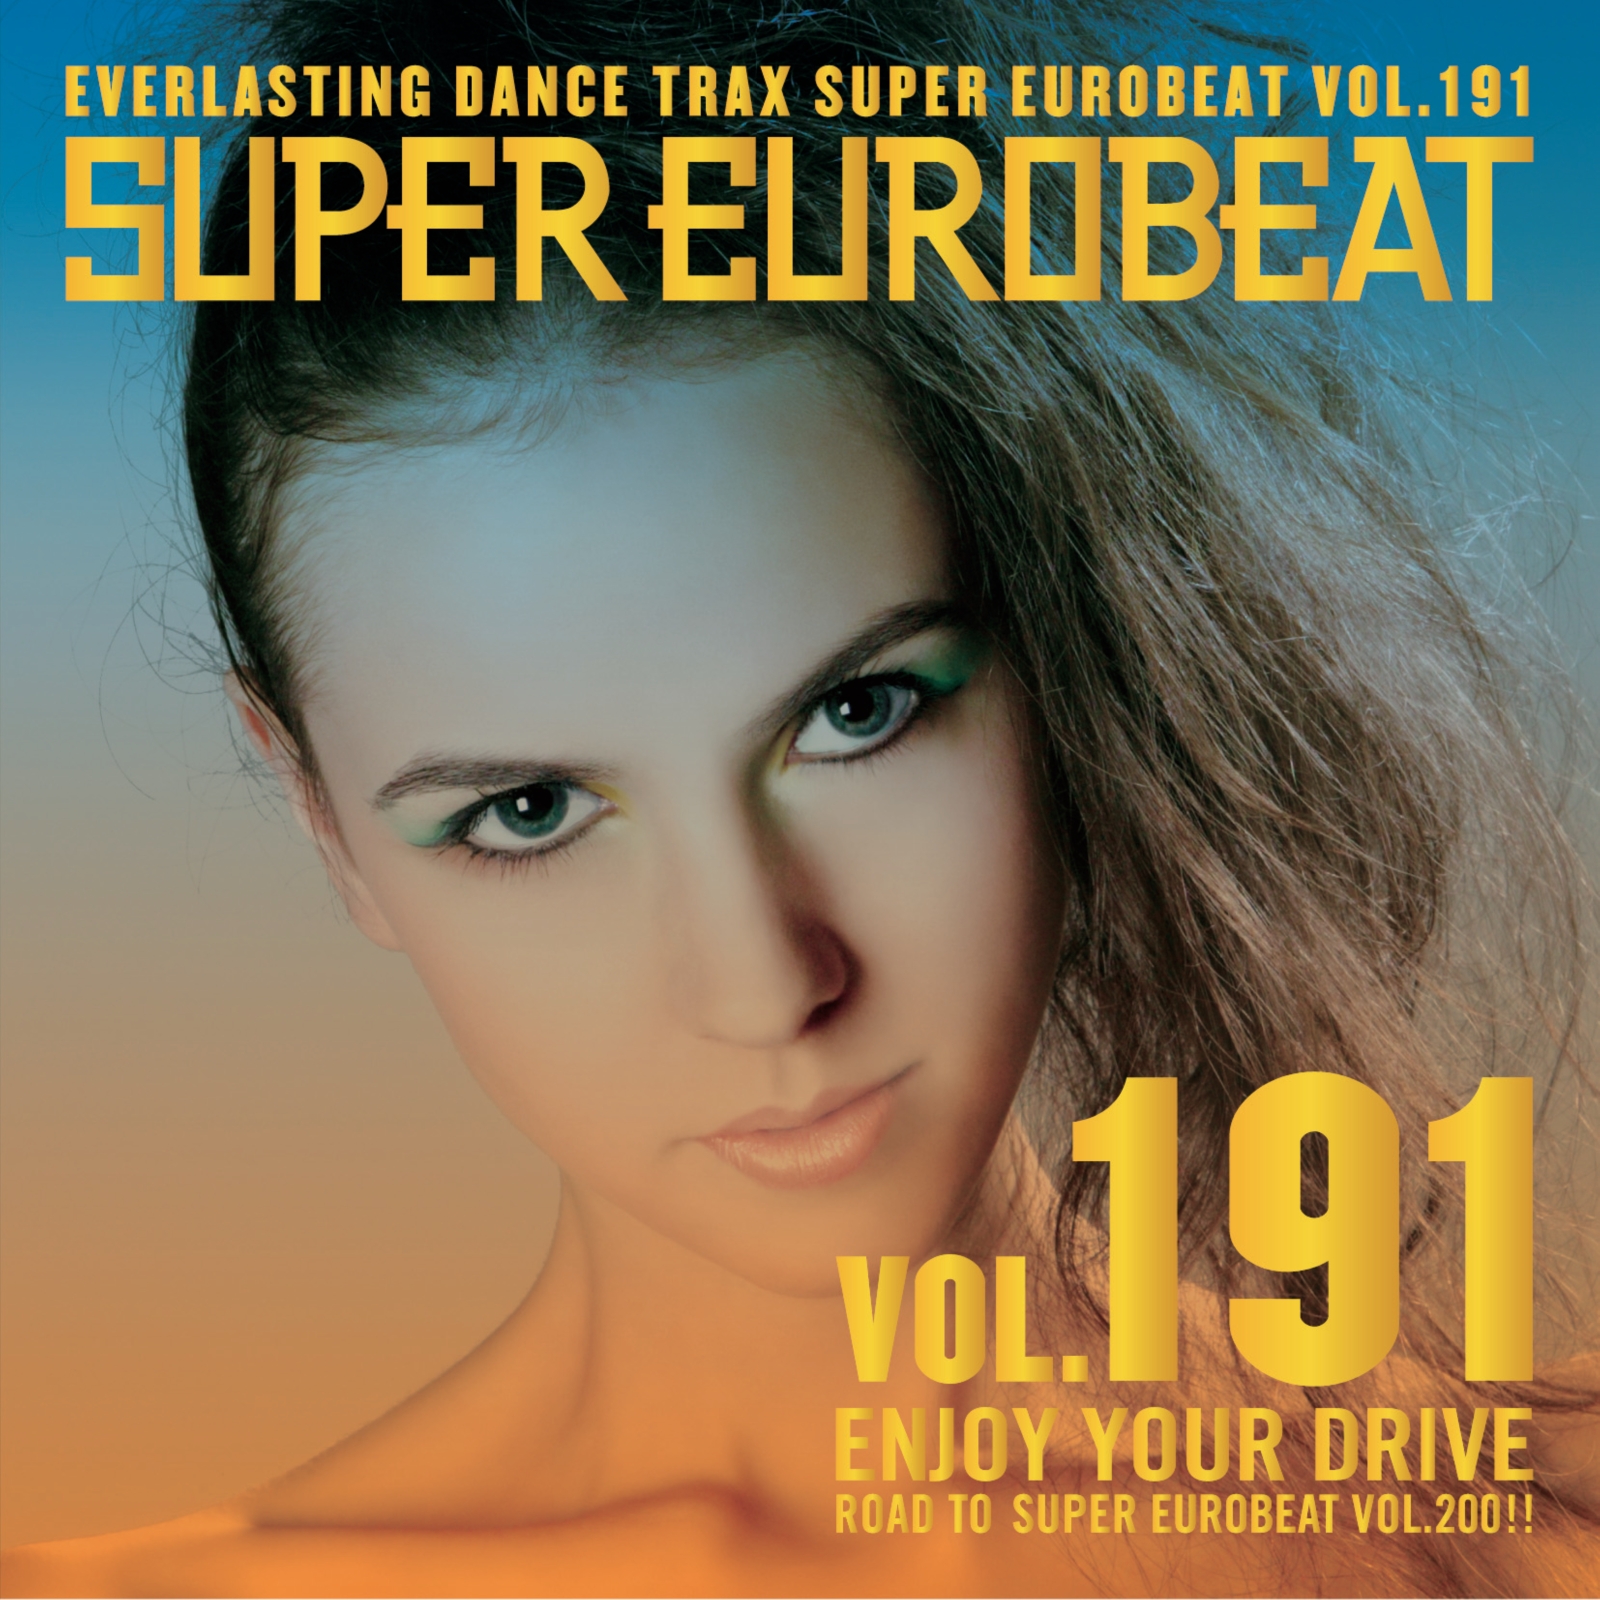 Dancing Queen, Eurobeat Wiki